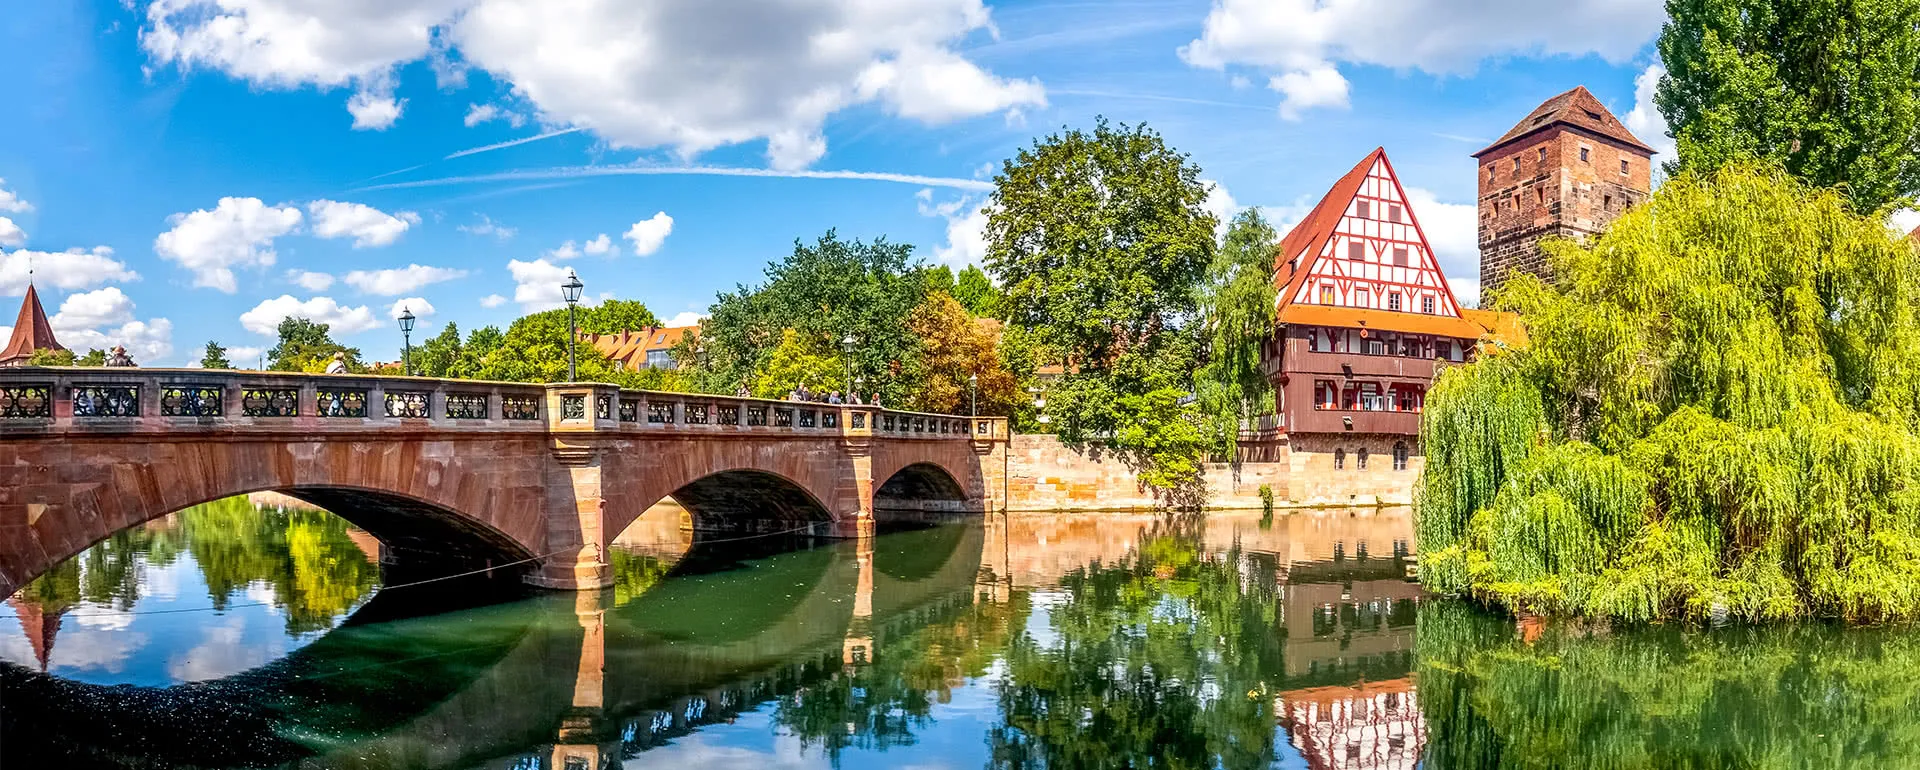 Nürnberg panorama image